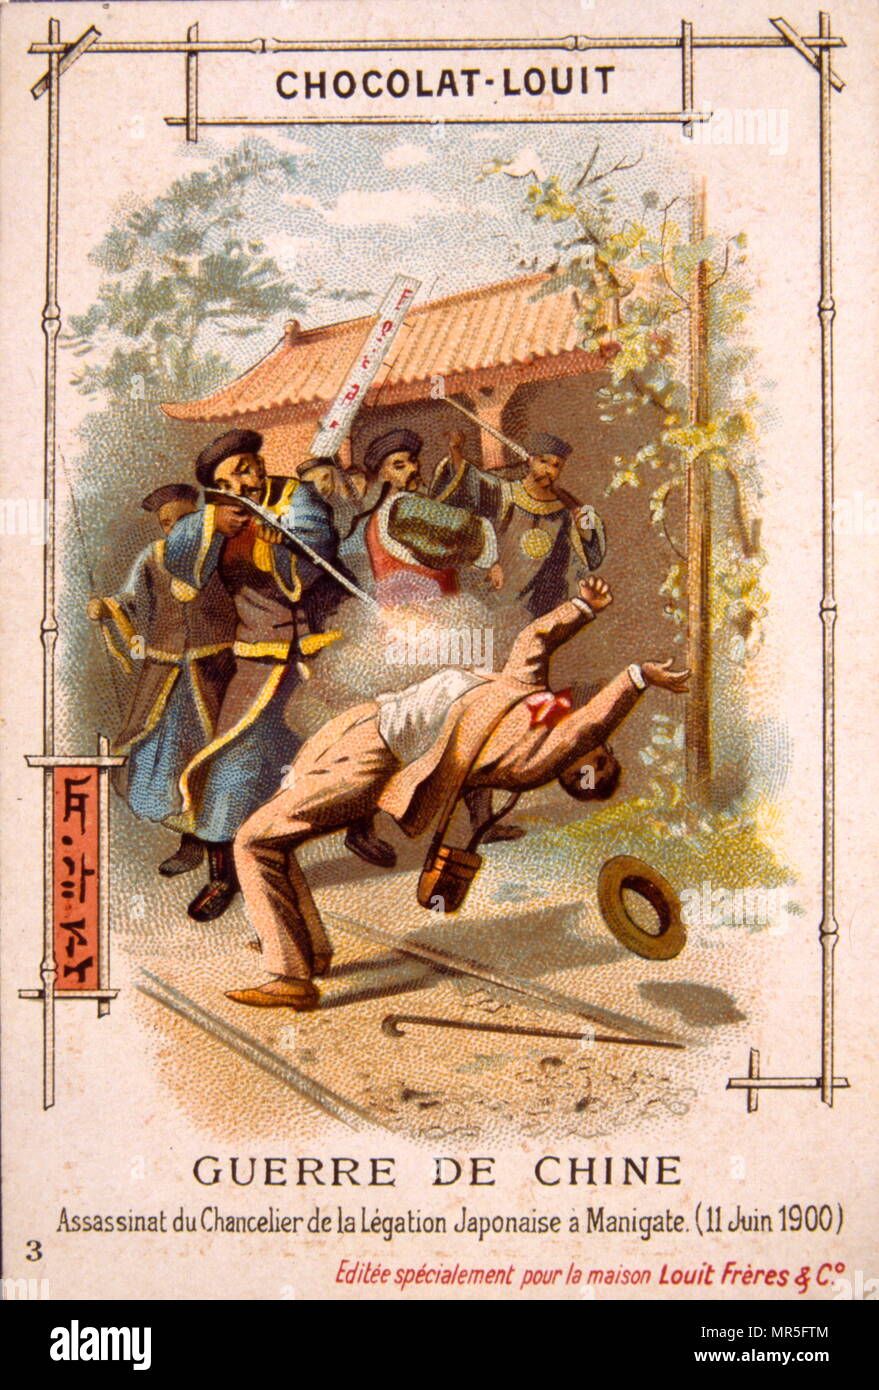 Ambassade du Japon en Chine a attaqué 1900. Carte d'adhérent du chocolat 1900 illustrant la révolte des Boxers en Chine. Banque D'Images